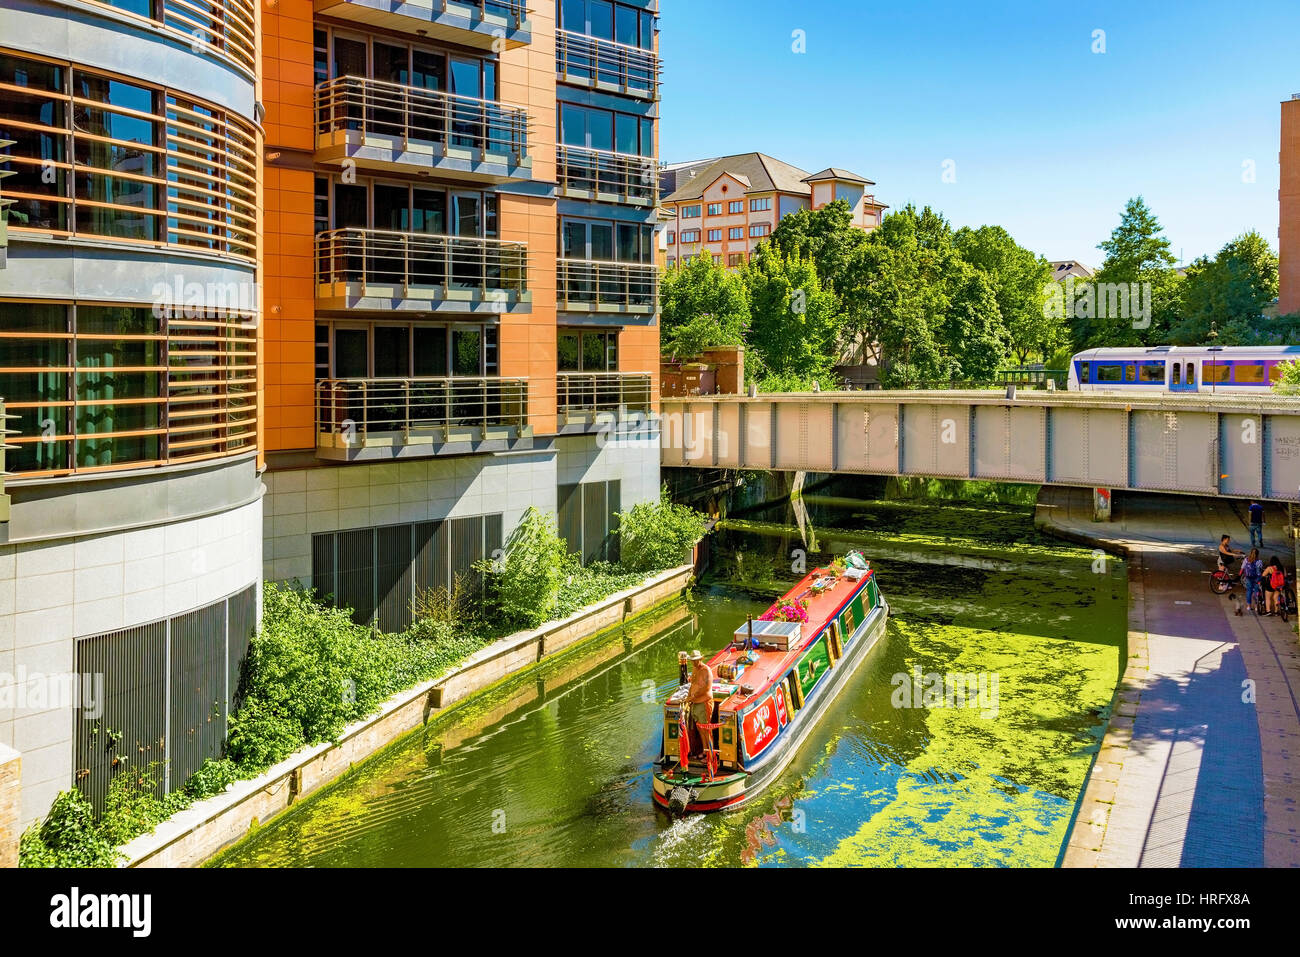 Londra - 19 Luglio: al parco di Regents Canal in una giornata di sole con una tradizionale barca inglese e architettura moderna su luglio 19th, 2016 a Londra Foto Stock